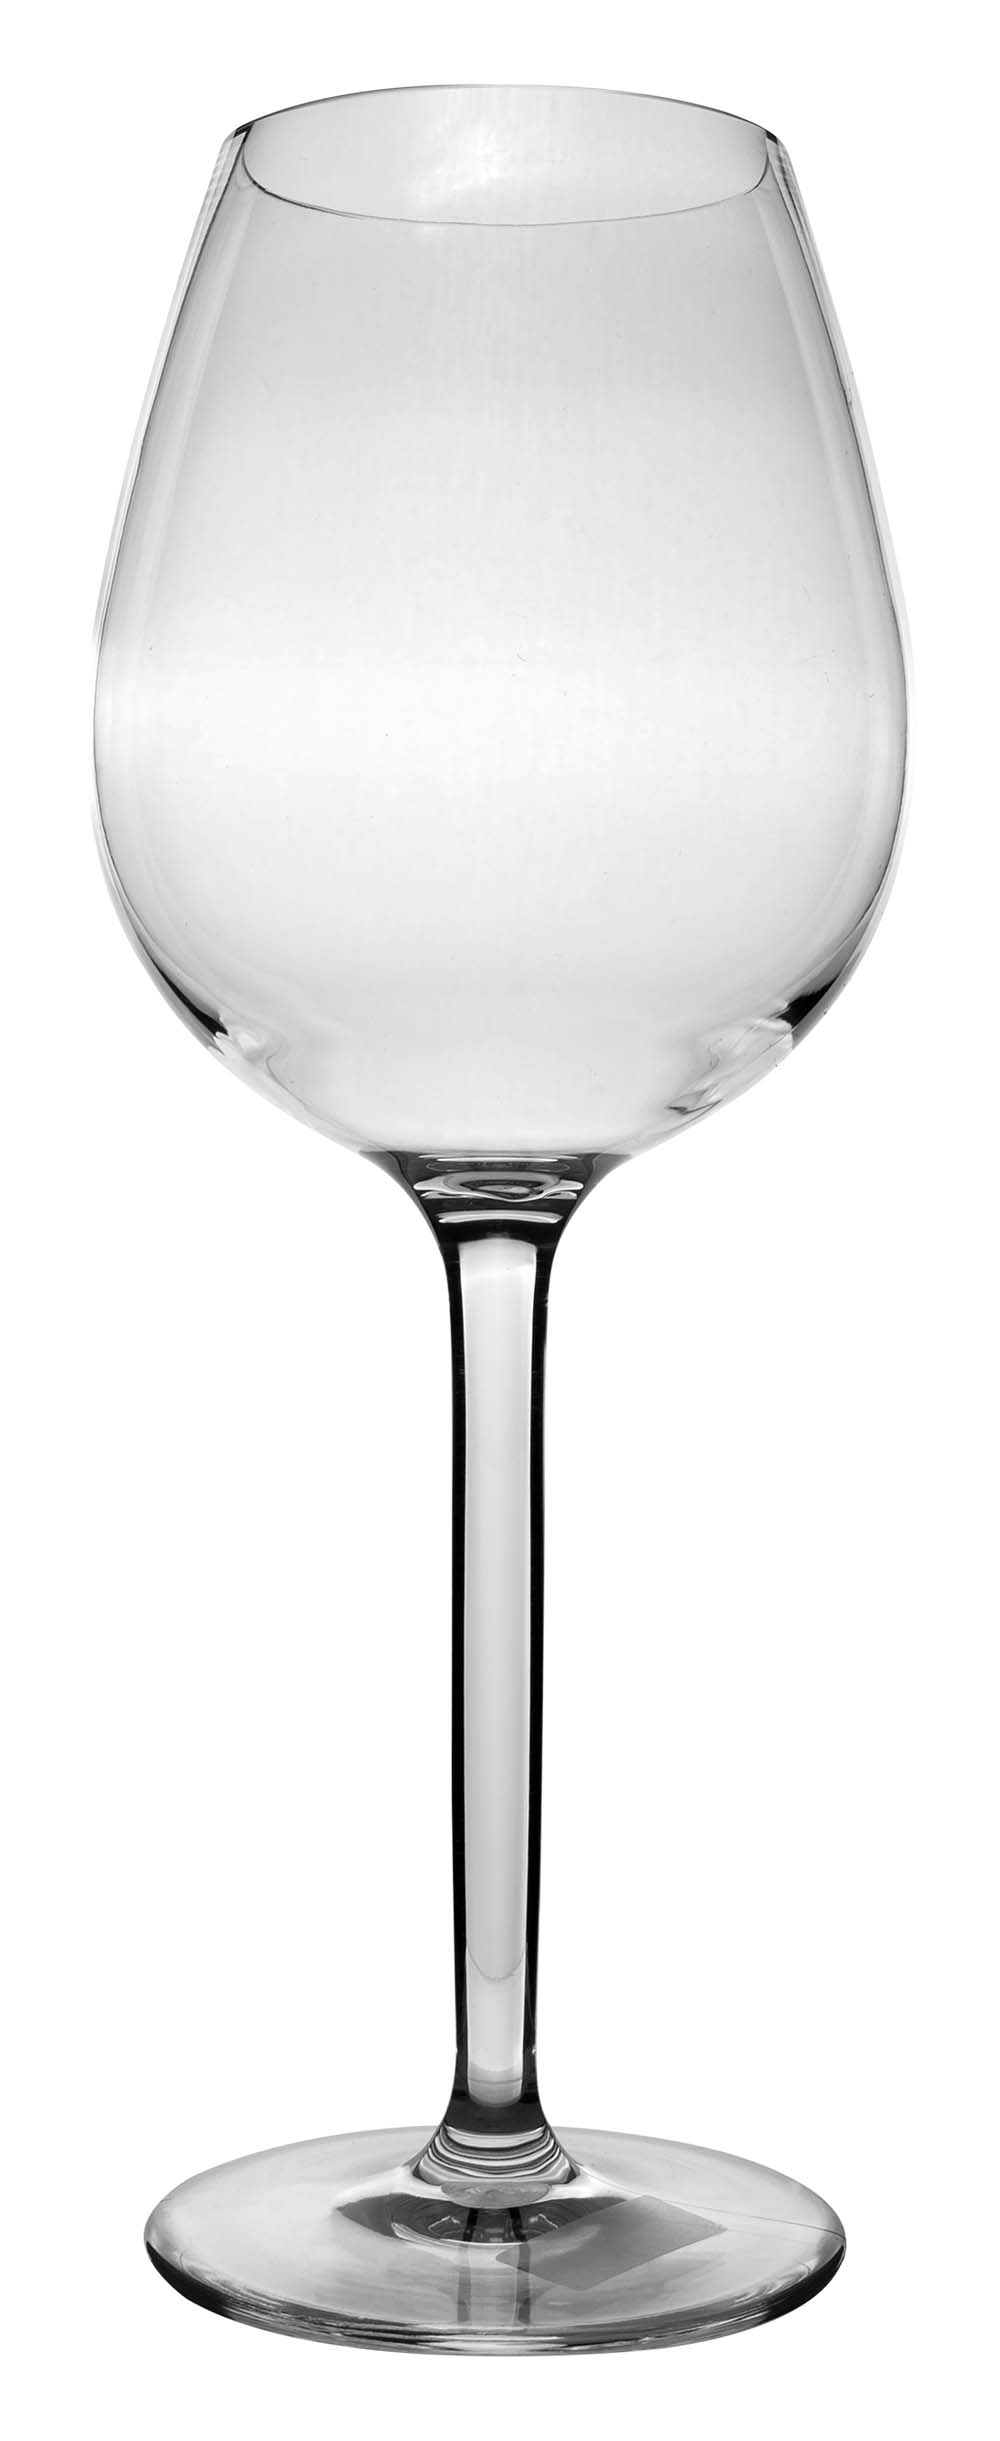 6101465 Un juego de copas de vino tinto extra resistente y lujoso. Fabricada 100% en tritán. Esto hace que las gafas sean casi irrompibles, ligeras y resistentes a los arañazos. Este vaso también es apto para lavavajillas. El vaso no contiene BPA.